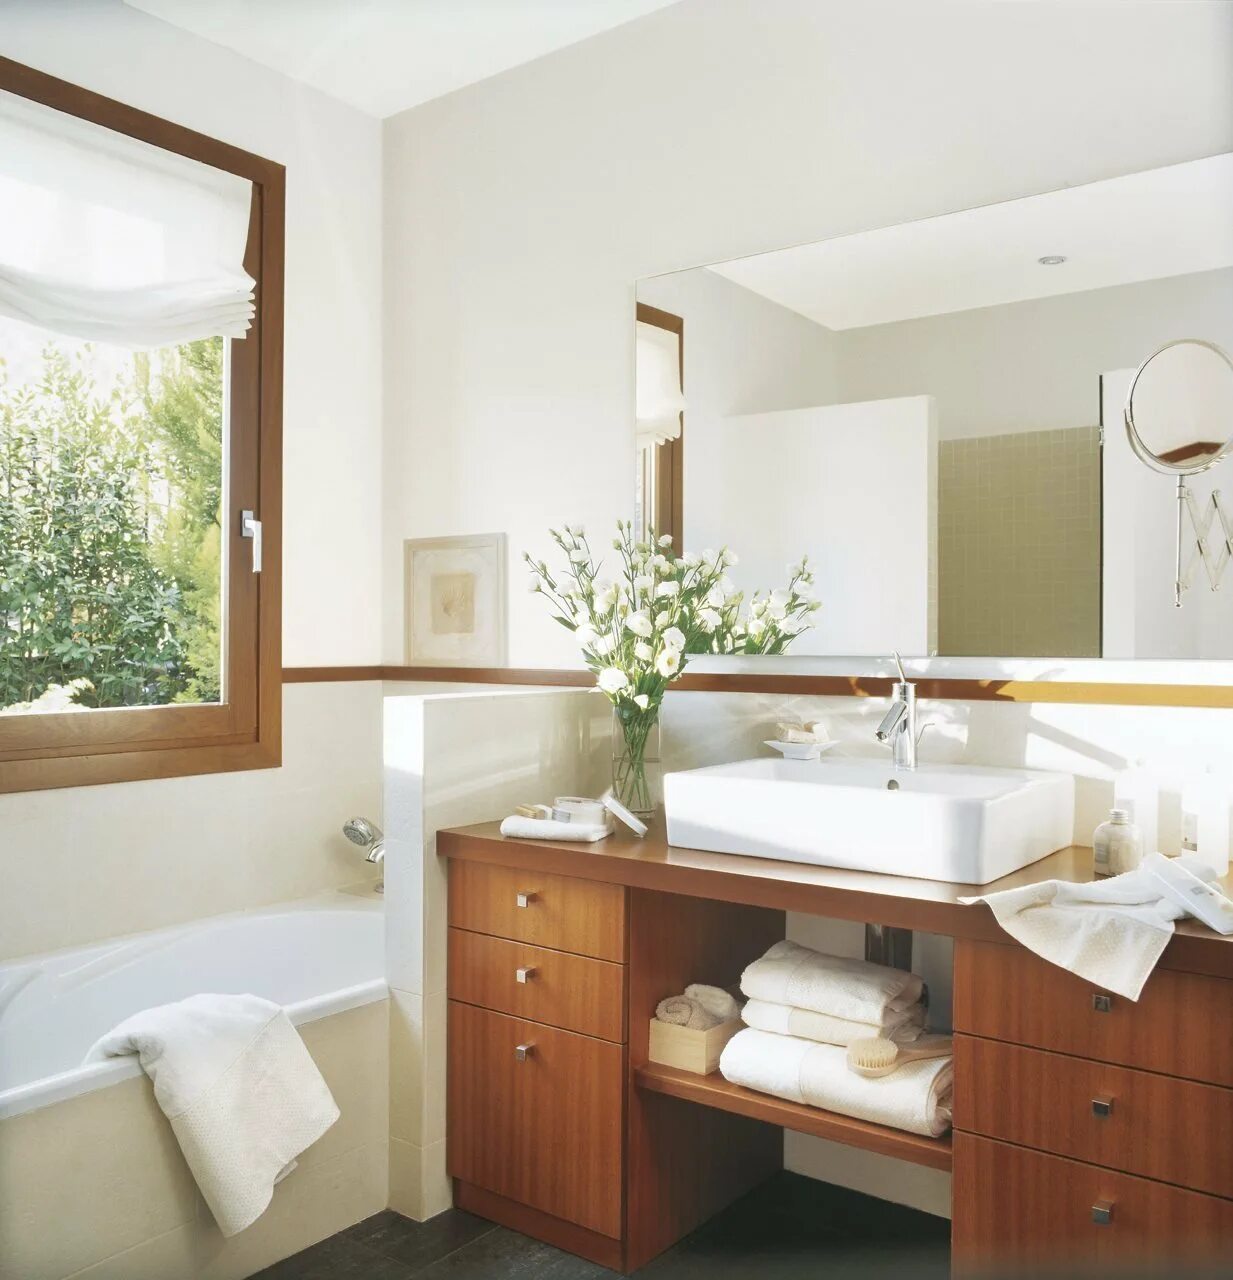 Ванная комната с окном. Небольшая ванная с окном. Ванные комнаты с окном в частном доме. Ванная с окном интерьер. Разместить ванну в ванной комнате